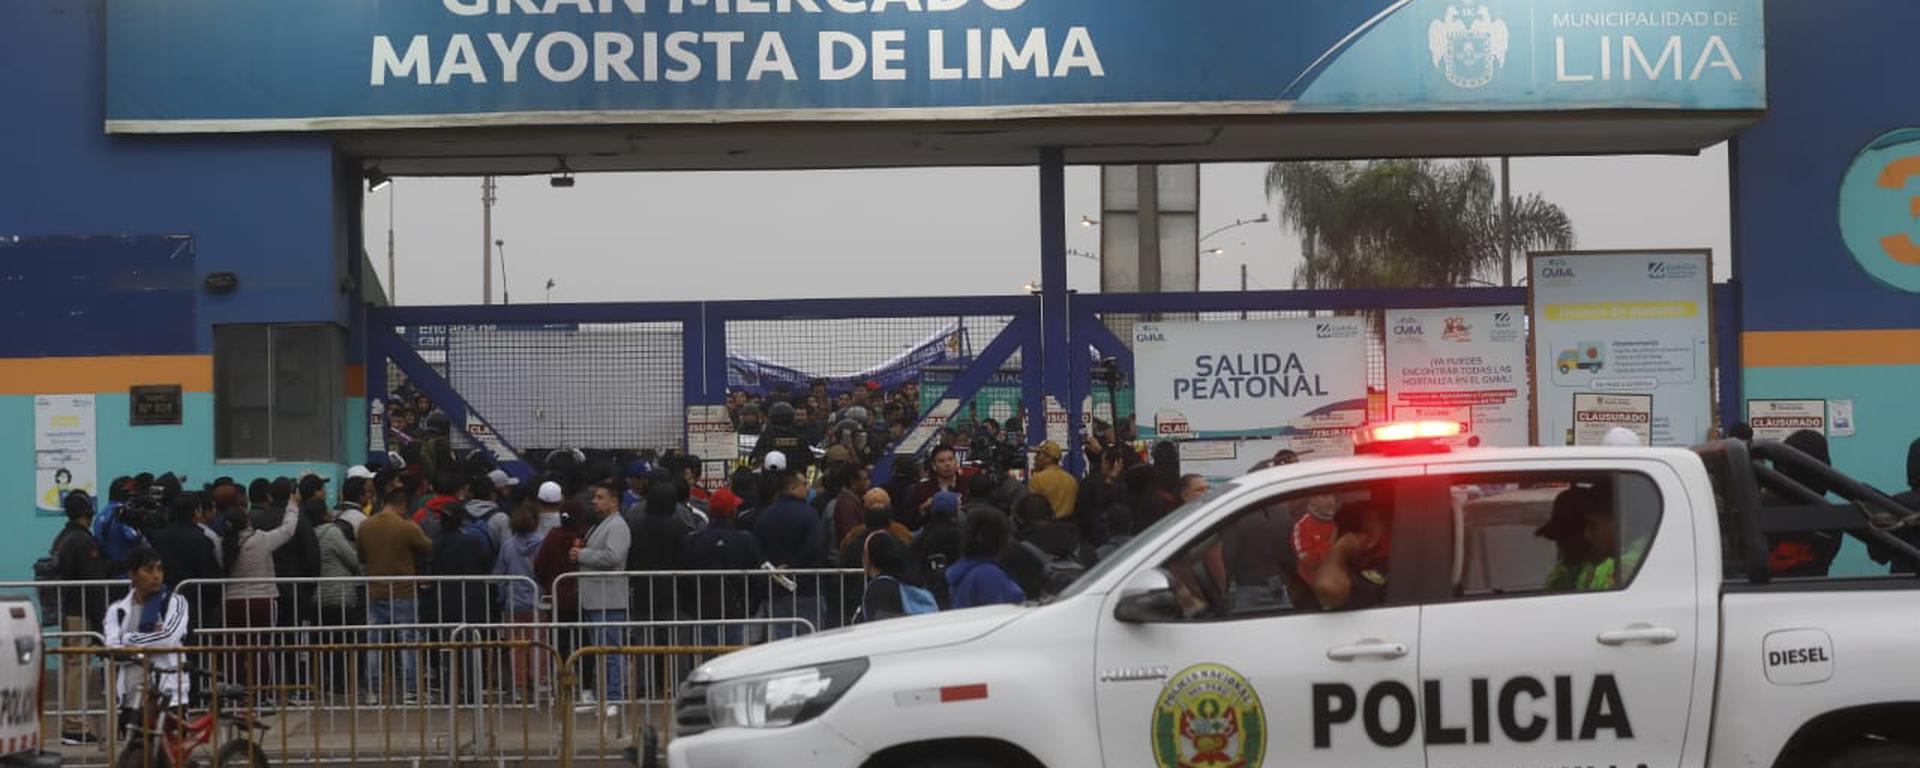 Mercado mayorista de Lima: paro de 48 horas podría convertirse en indefinido